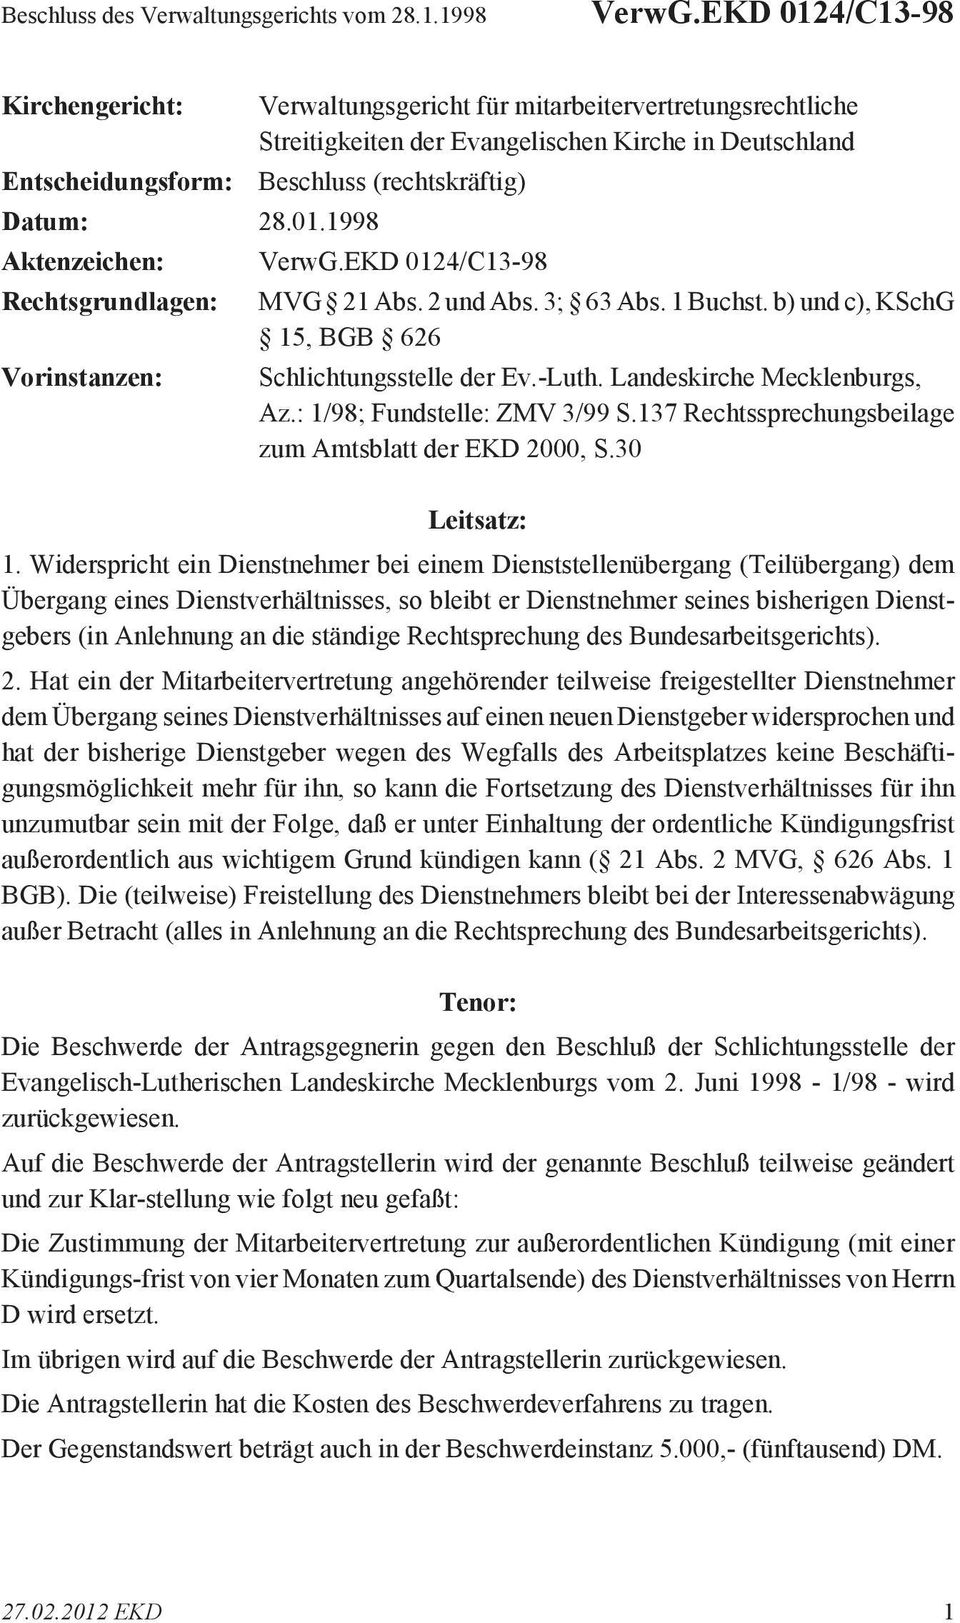 2 und Abs. 3; 63 Abs. 1 Buchst. b) und c), KSchG 15, BGB 626 Schlichtungsstelle der Ev.-Luth. Landeskirche Mecklenburgs, Az.: 1/98; Fundstelle: ZMV 3/99 S.